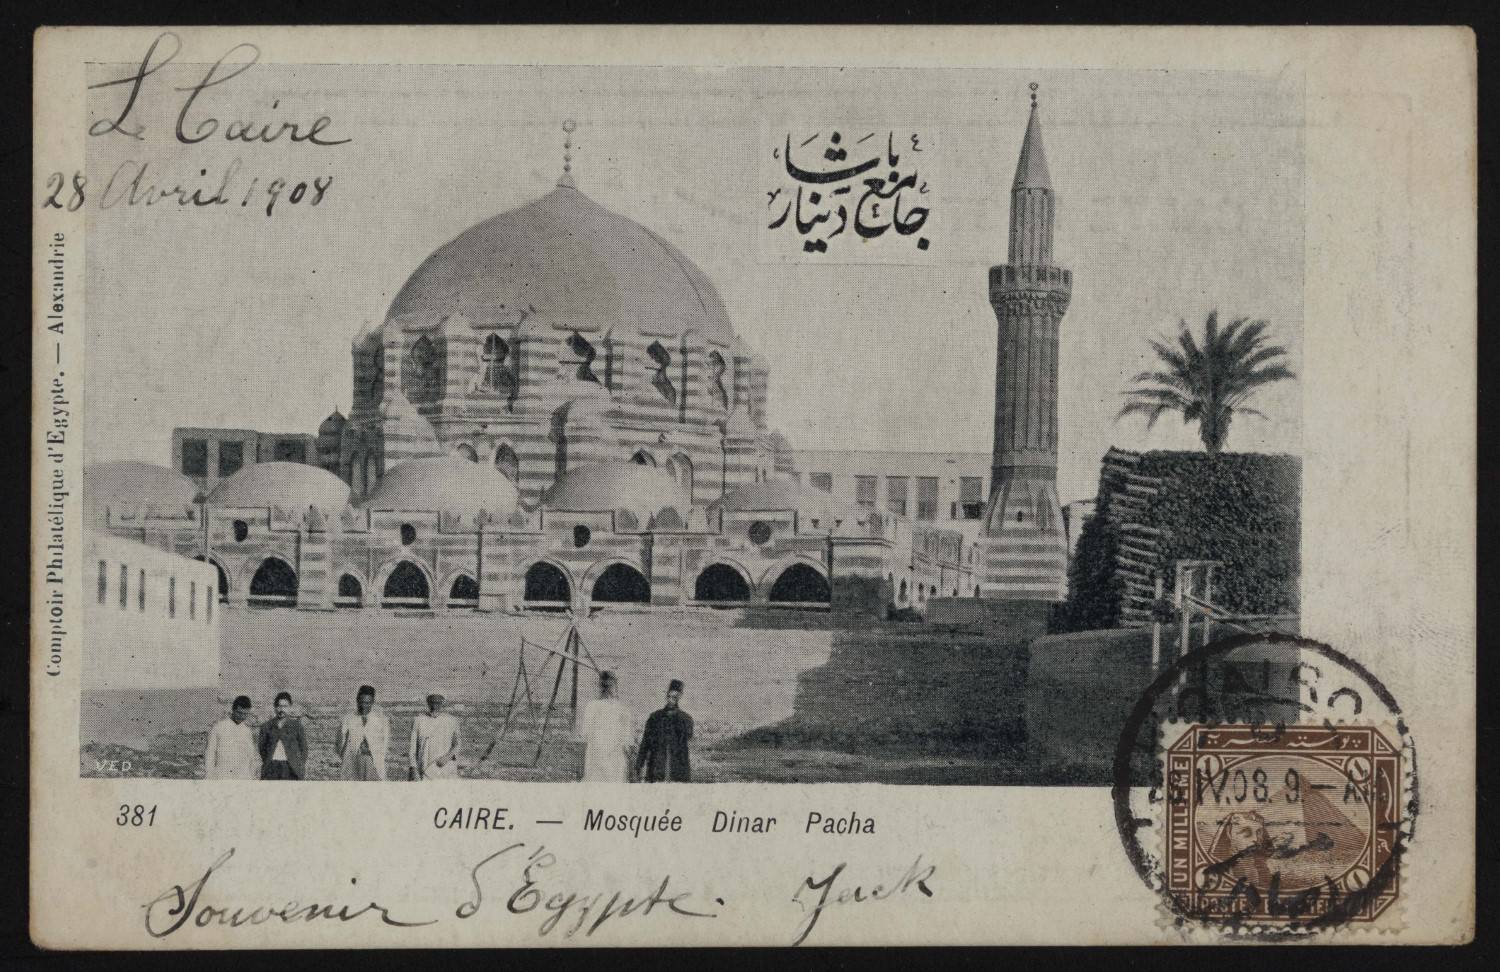 Postcard of Dinar Pasha Mosque, April 28, 1908